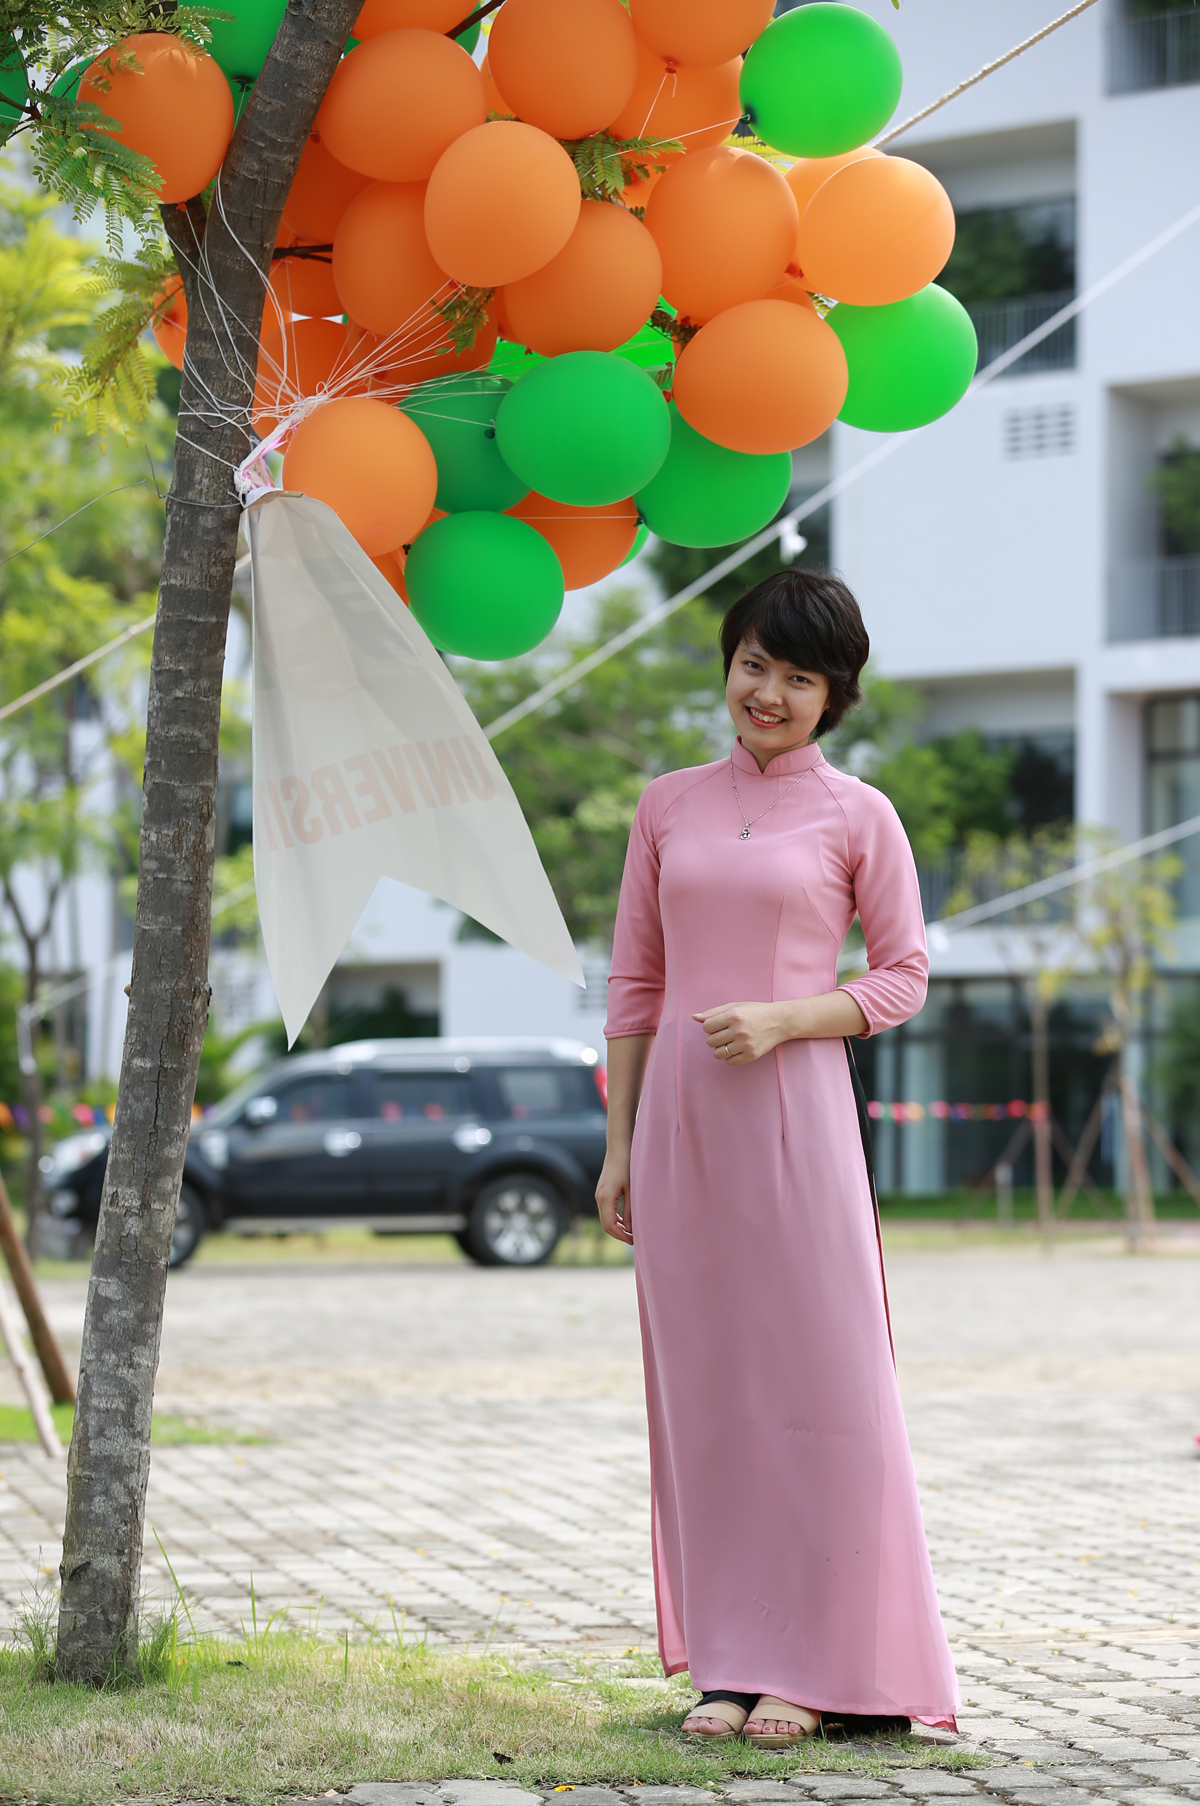 <p> Nguyễn Thị Thu Hằng, phòng Công tác sinh viên, cũng diện áo dài để đón tân sinh viên mới. Cô là hoa khôi của phòng Công tác sinh viên với vẻ đẹp quyến rũ. </p> <p>  </p> <p>  </p>